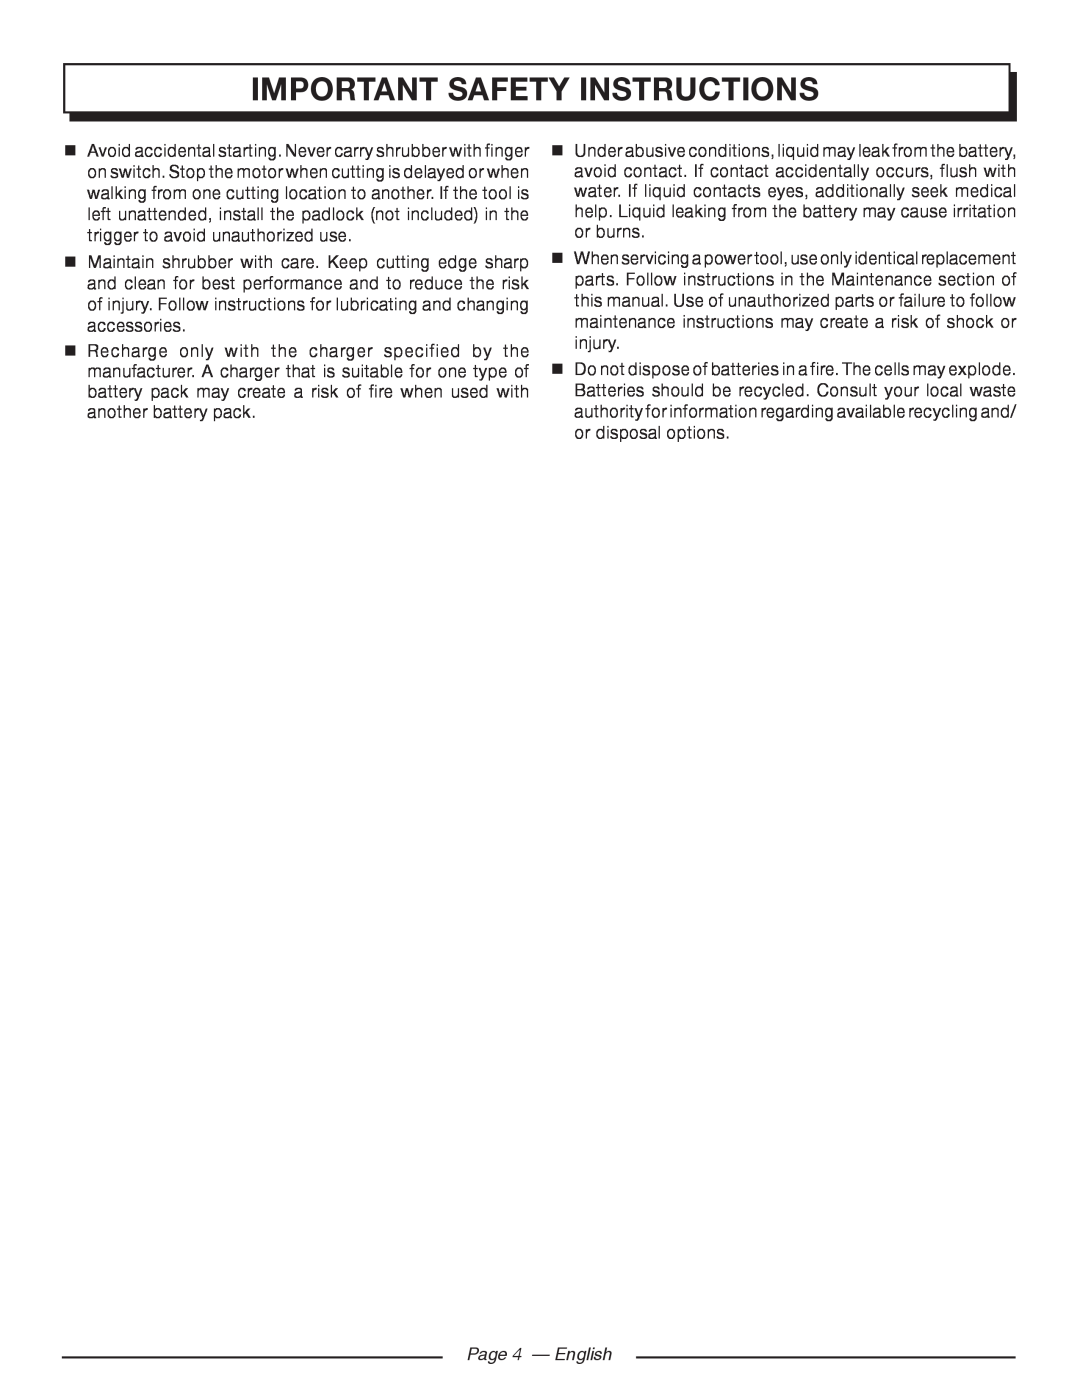 Homelite UT44171 manuel dutilisation Page 4 - English, important safety instructions 